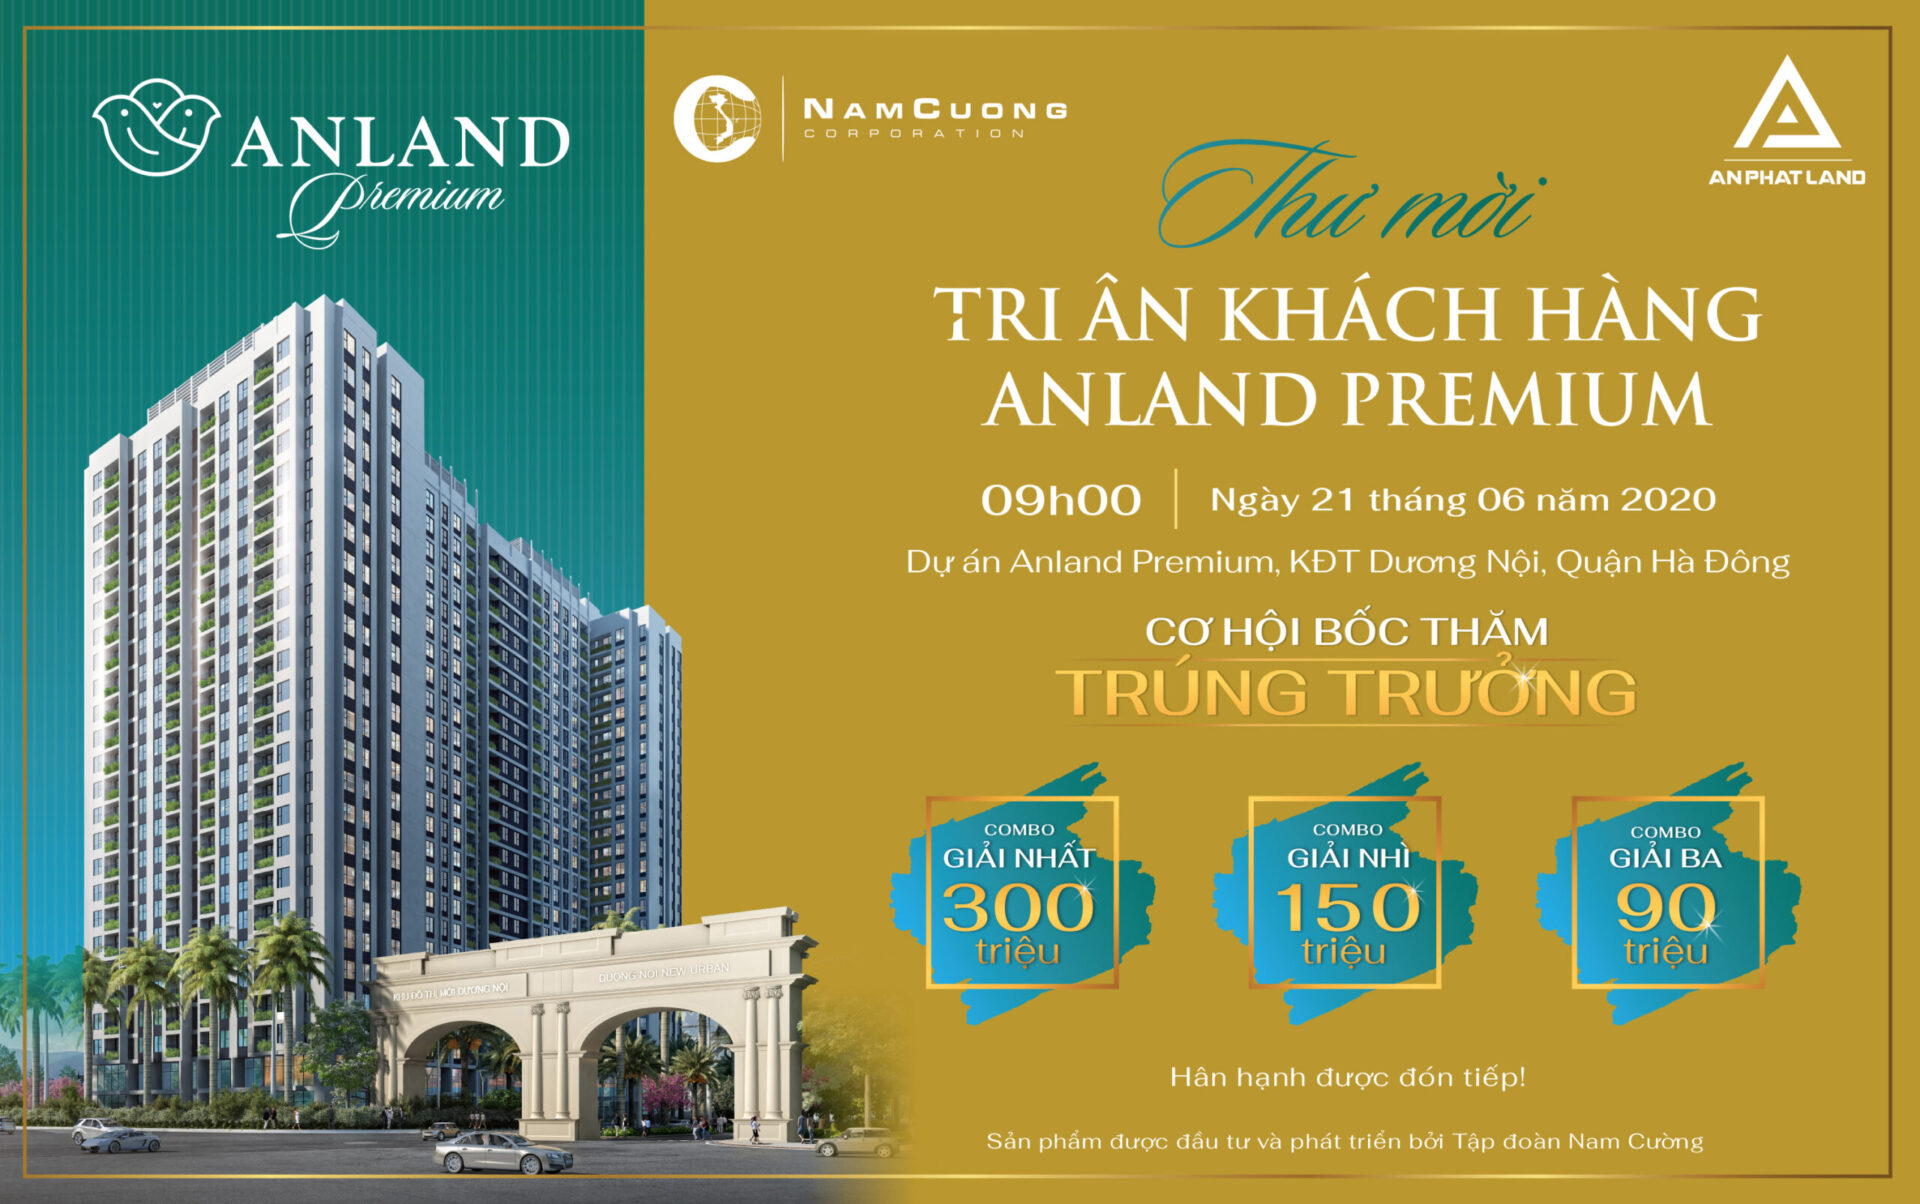 Anland Premium đã mở bán thành công 94% trên tổng số 575 căn hộ